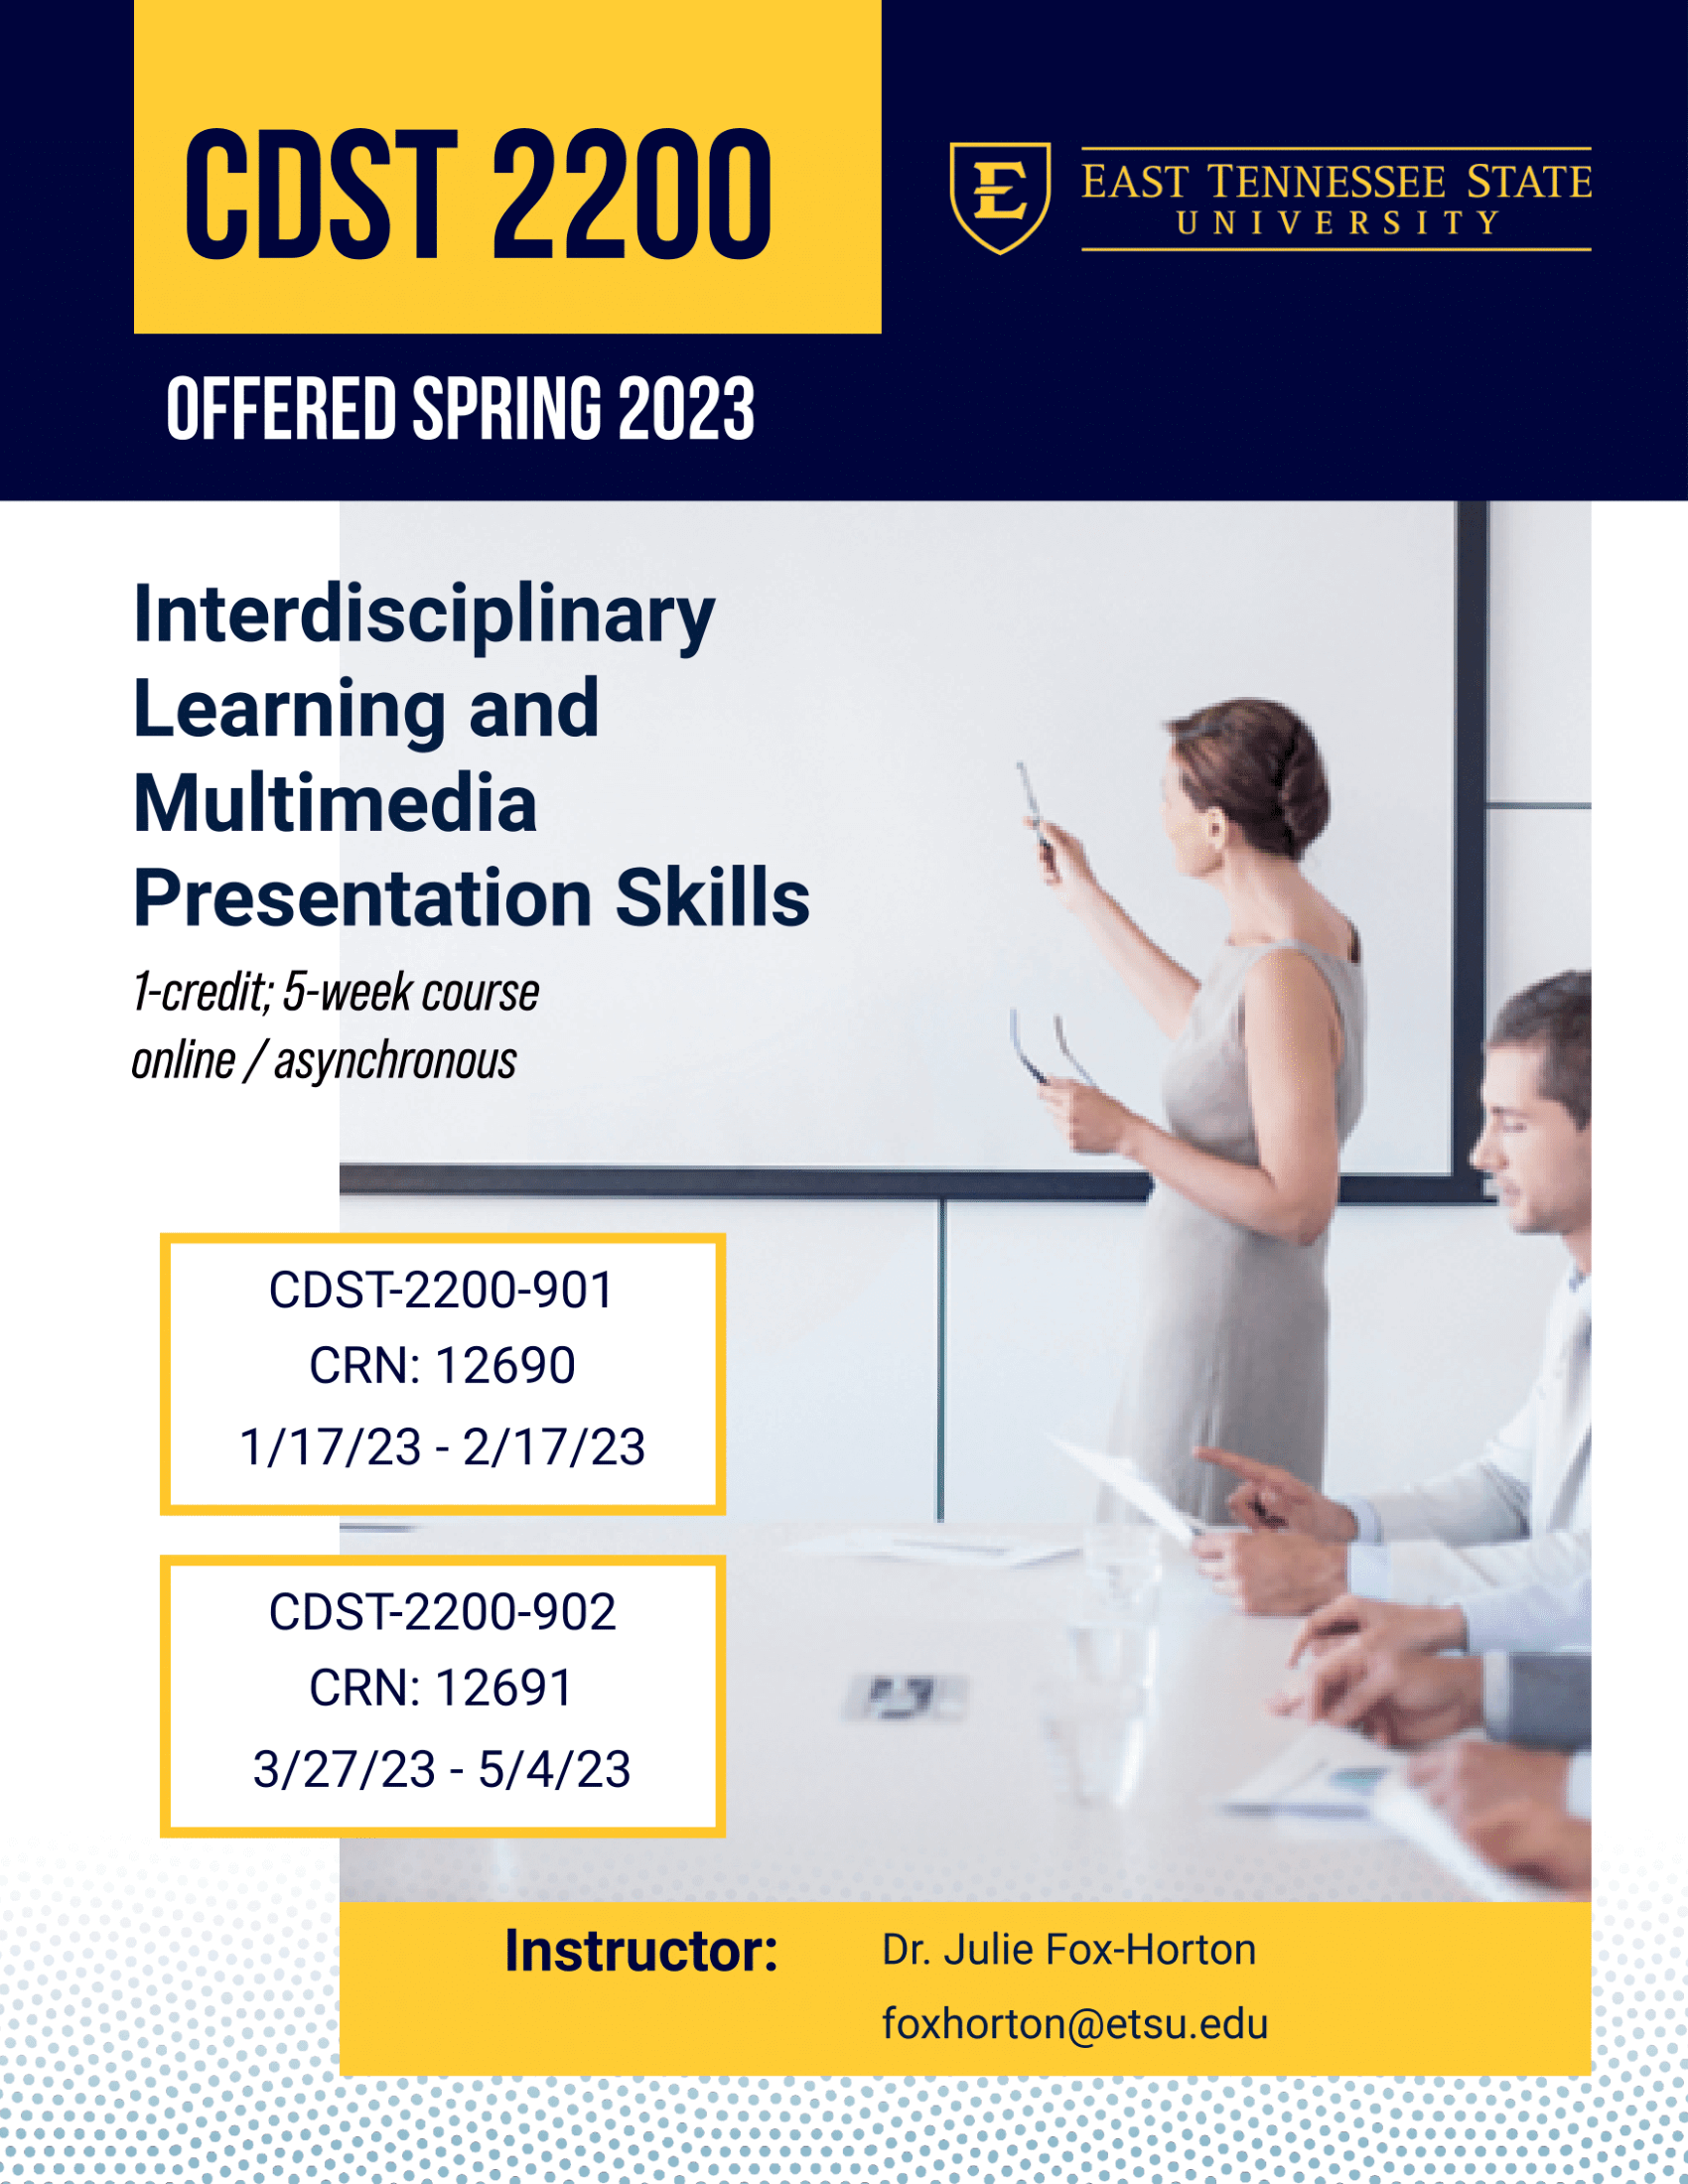 CDST 2200: Interdisciplinary Learning and Multimedia Presentation Skills